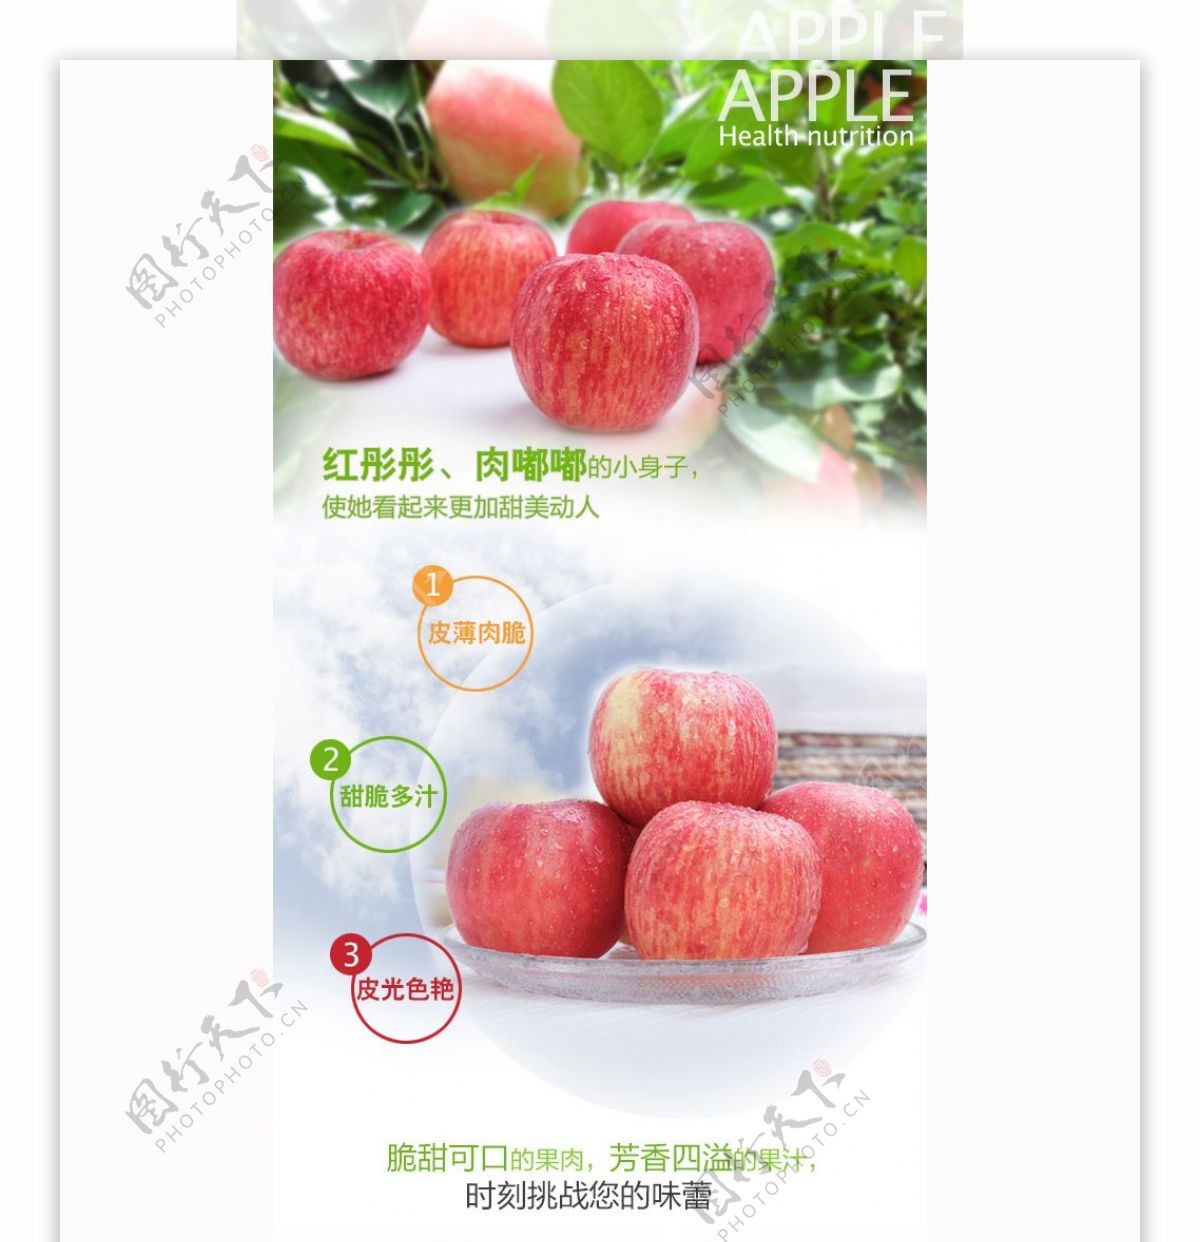 水果苹果的详情描述